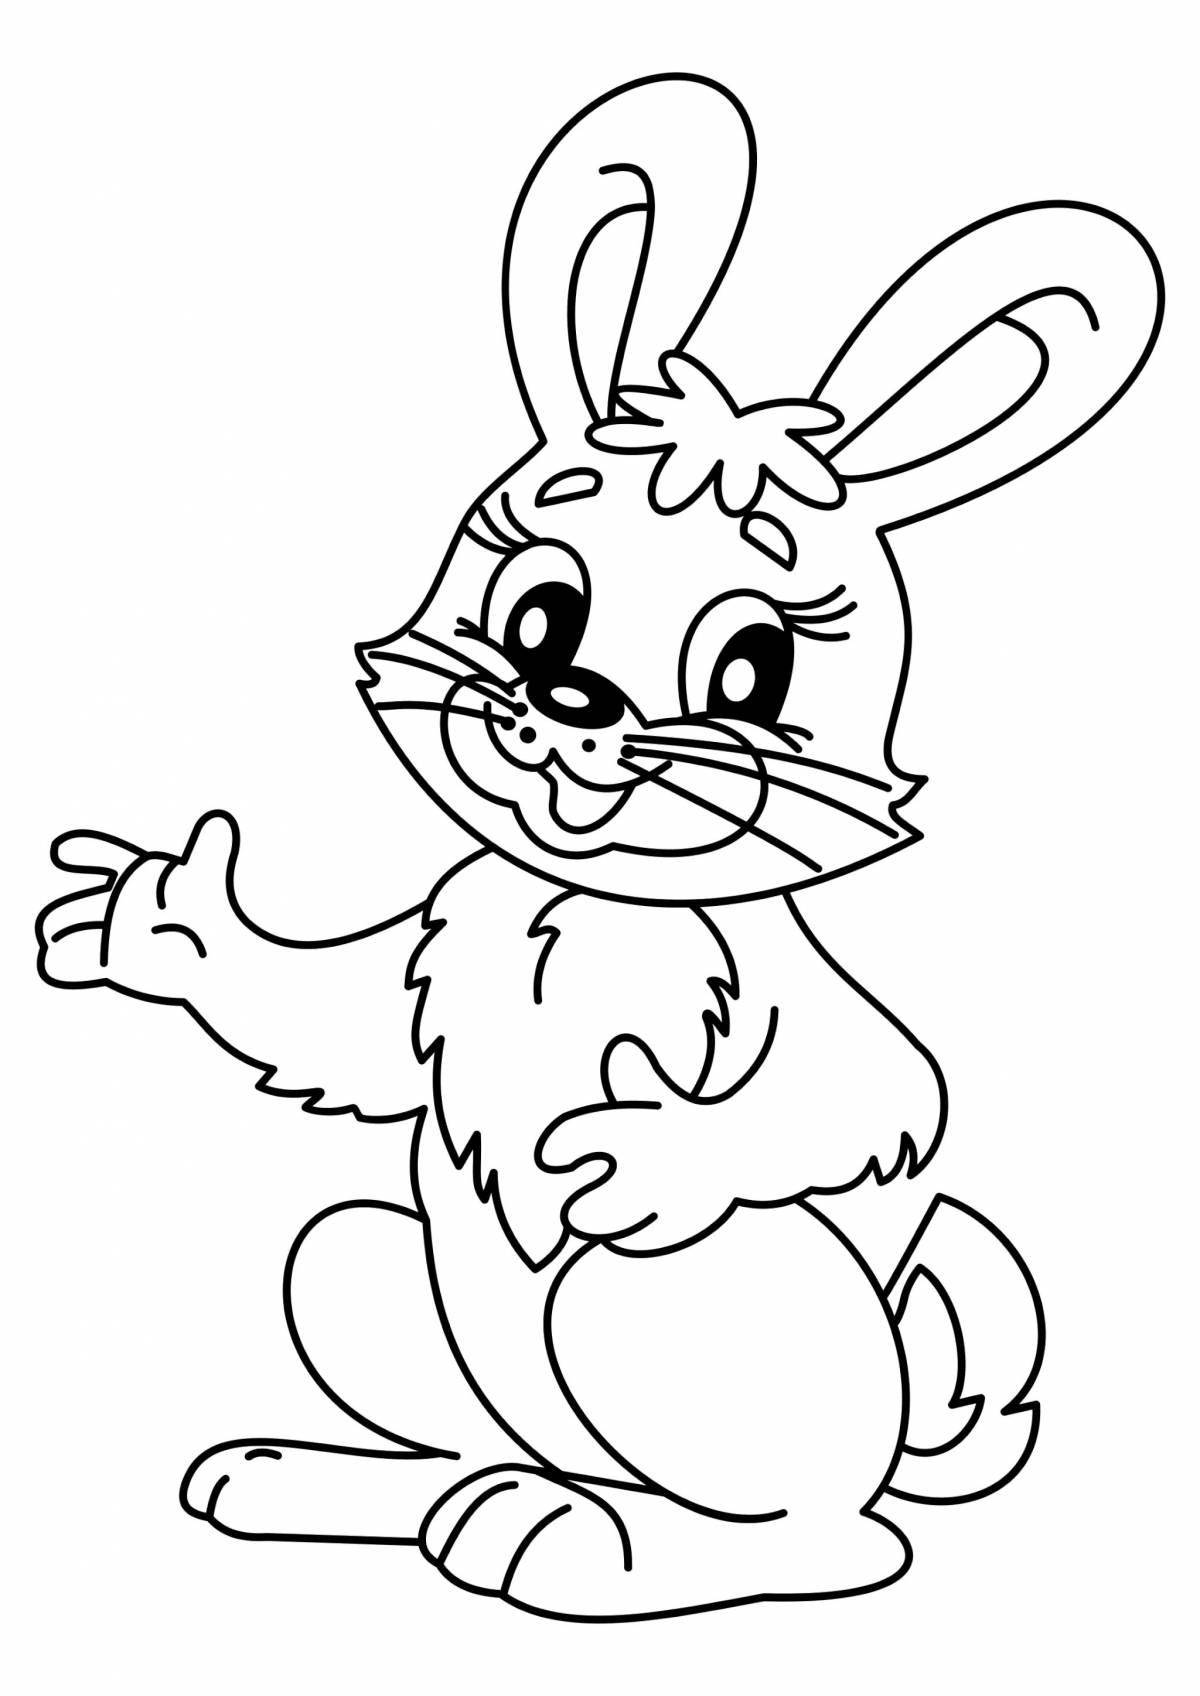 Coloring cute cartoon hare